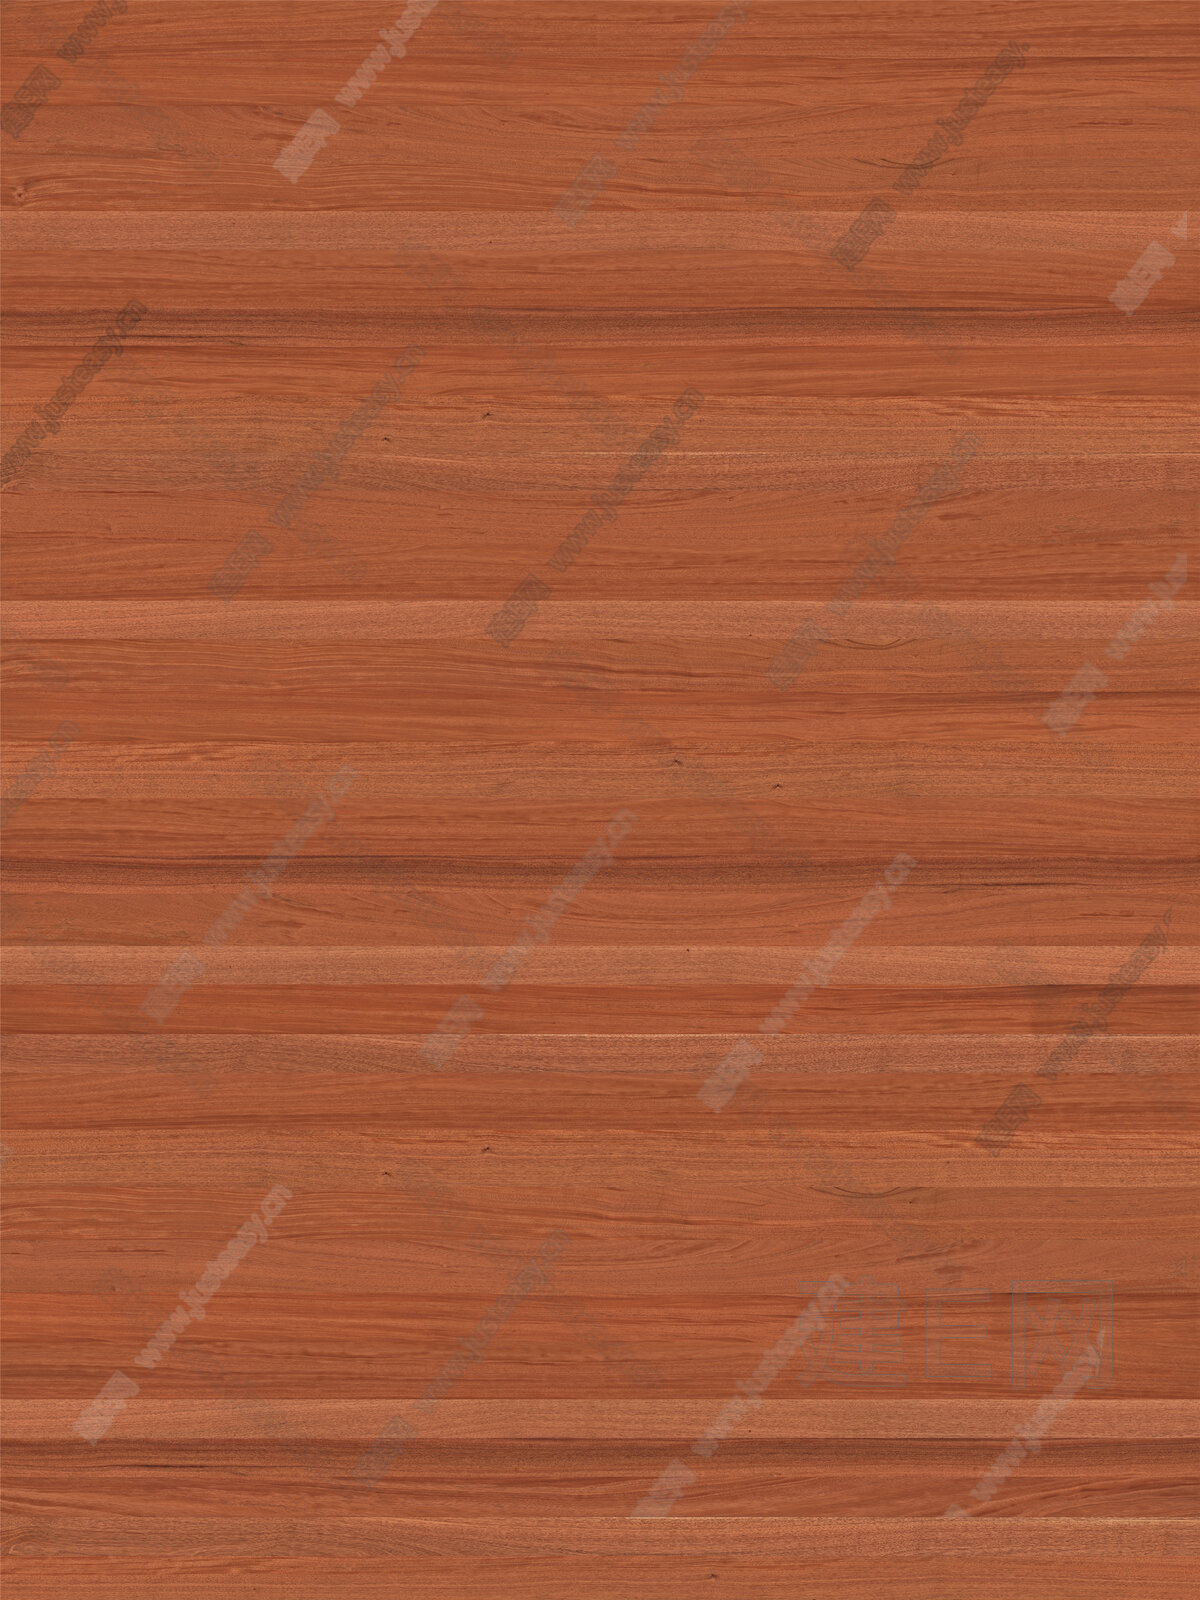 高清红木纹木饰面贴图3d贴图下载[ID:105598548]_建E室内设计网